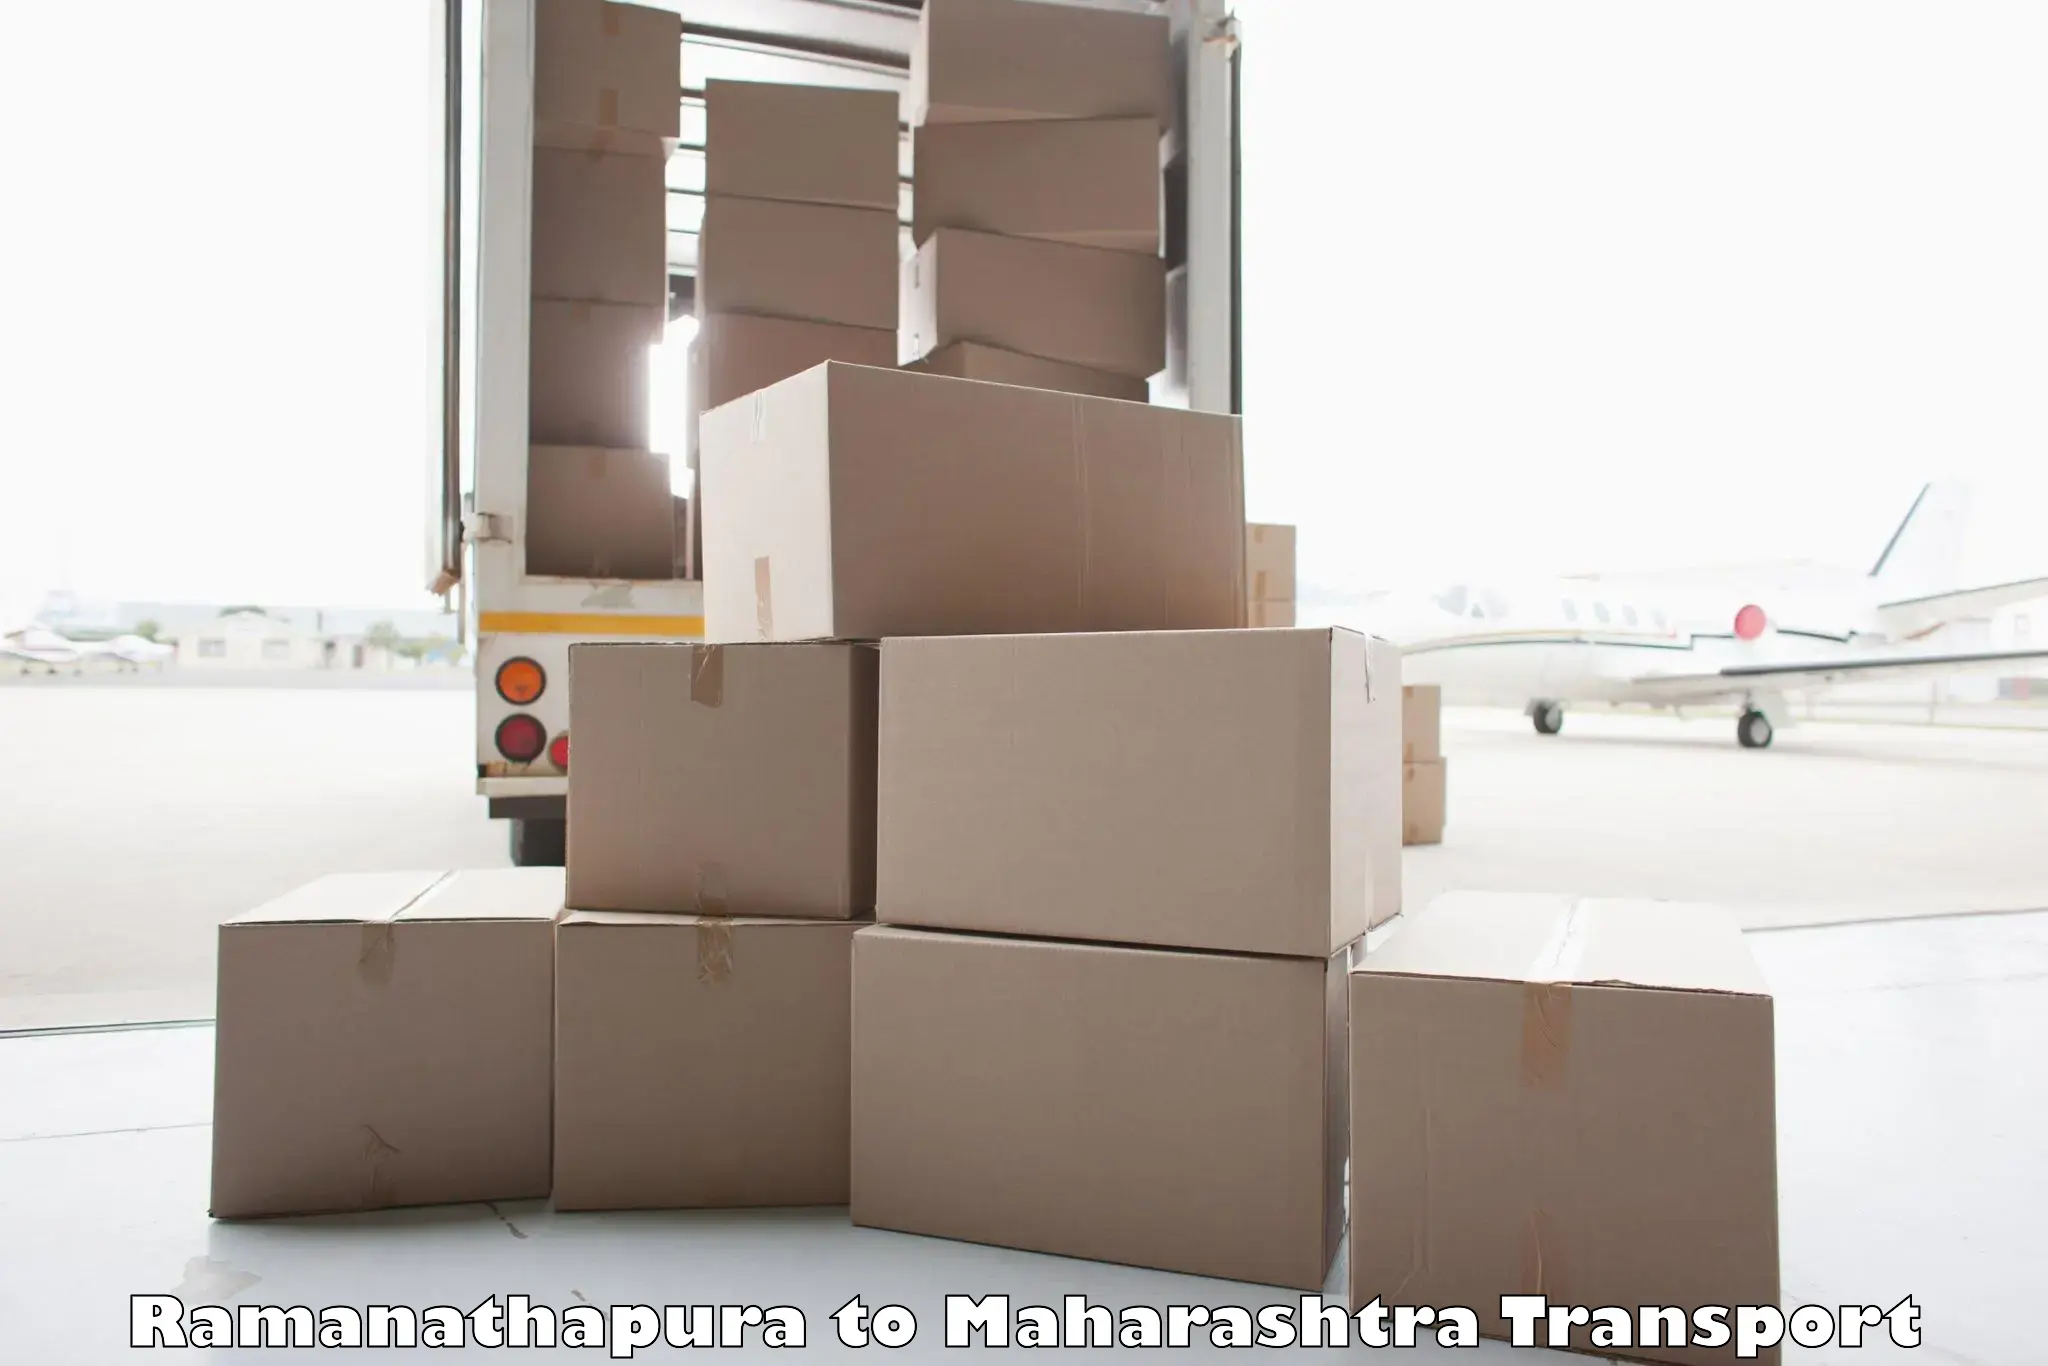 Goods delivery service Ramanathapura to Kurkumbh